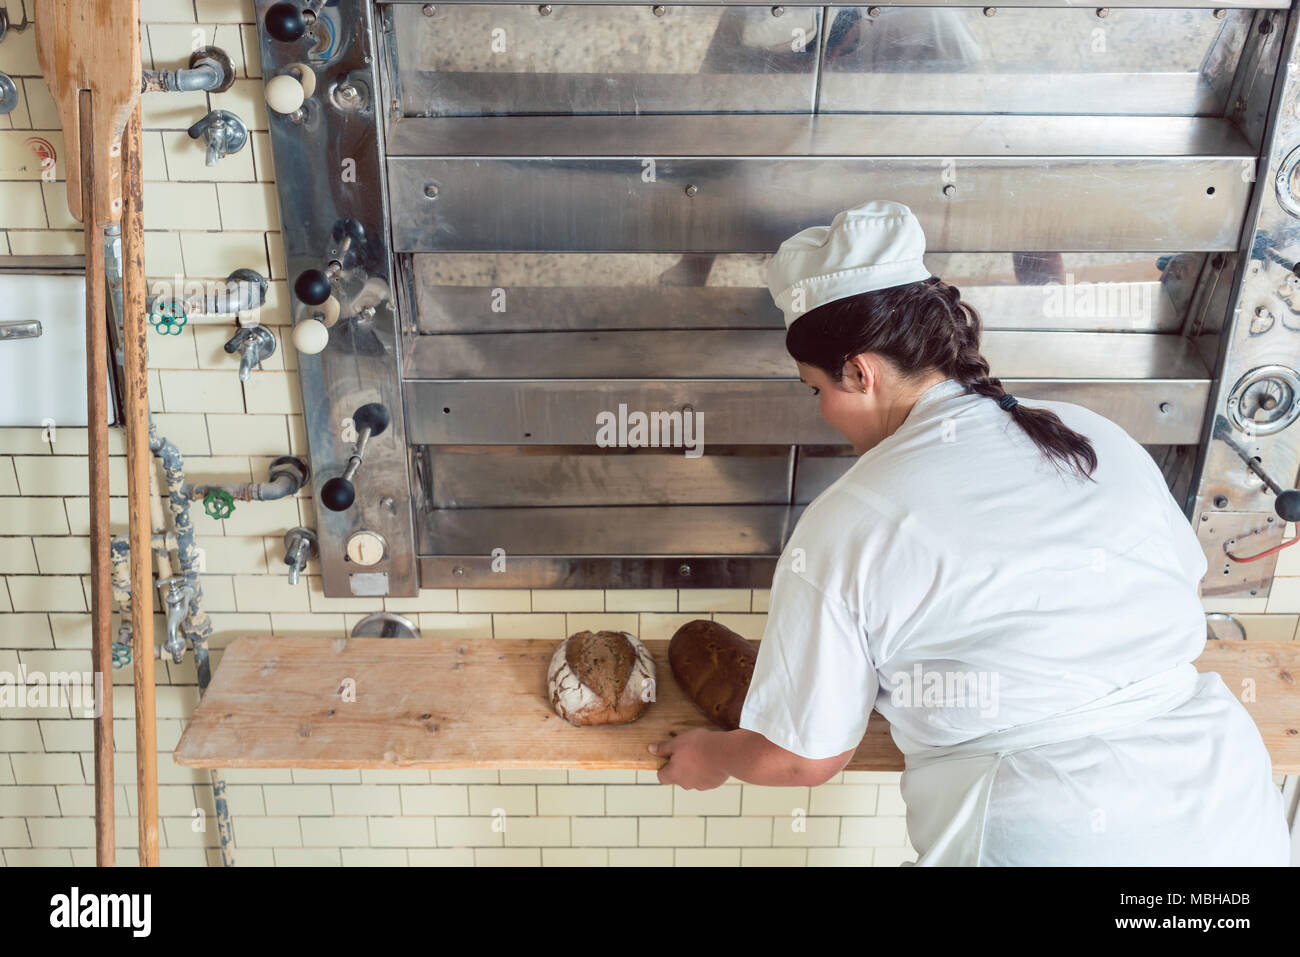 Baker mujer obteniendo rebanadas de pan de horno de panadería Foto de stock